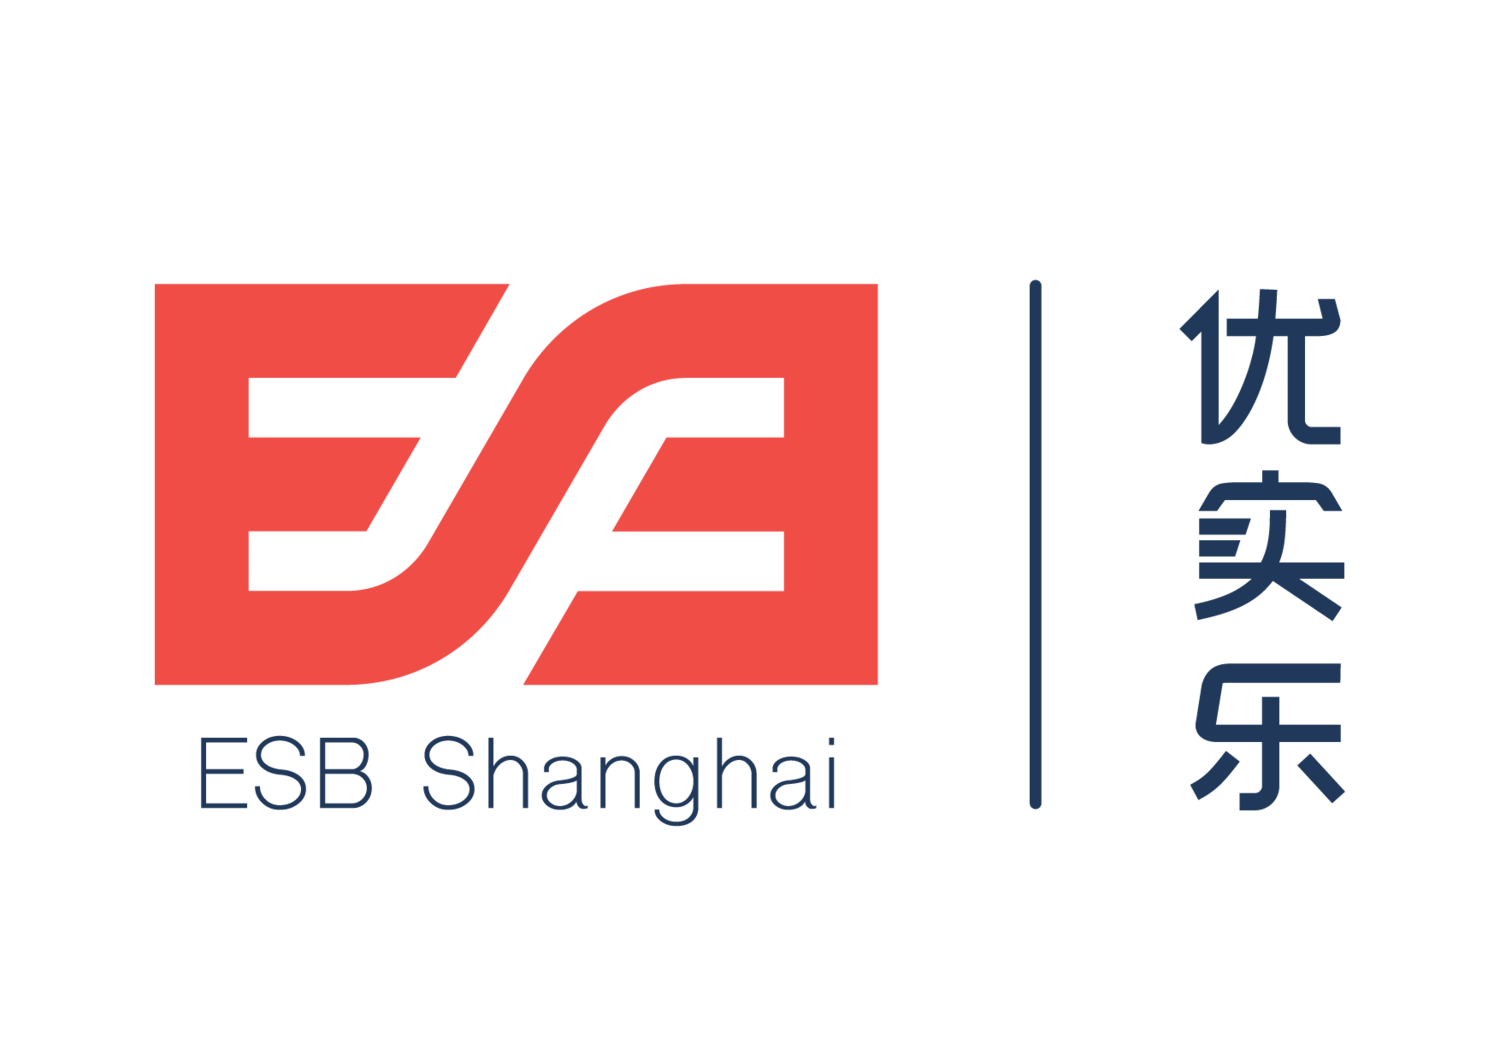 ESB Shanghai